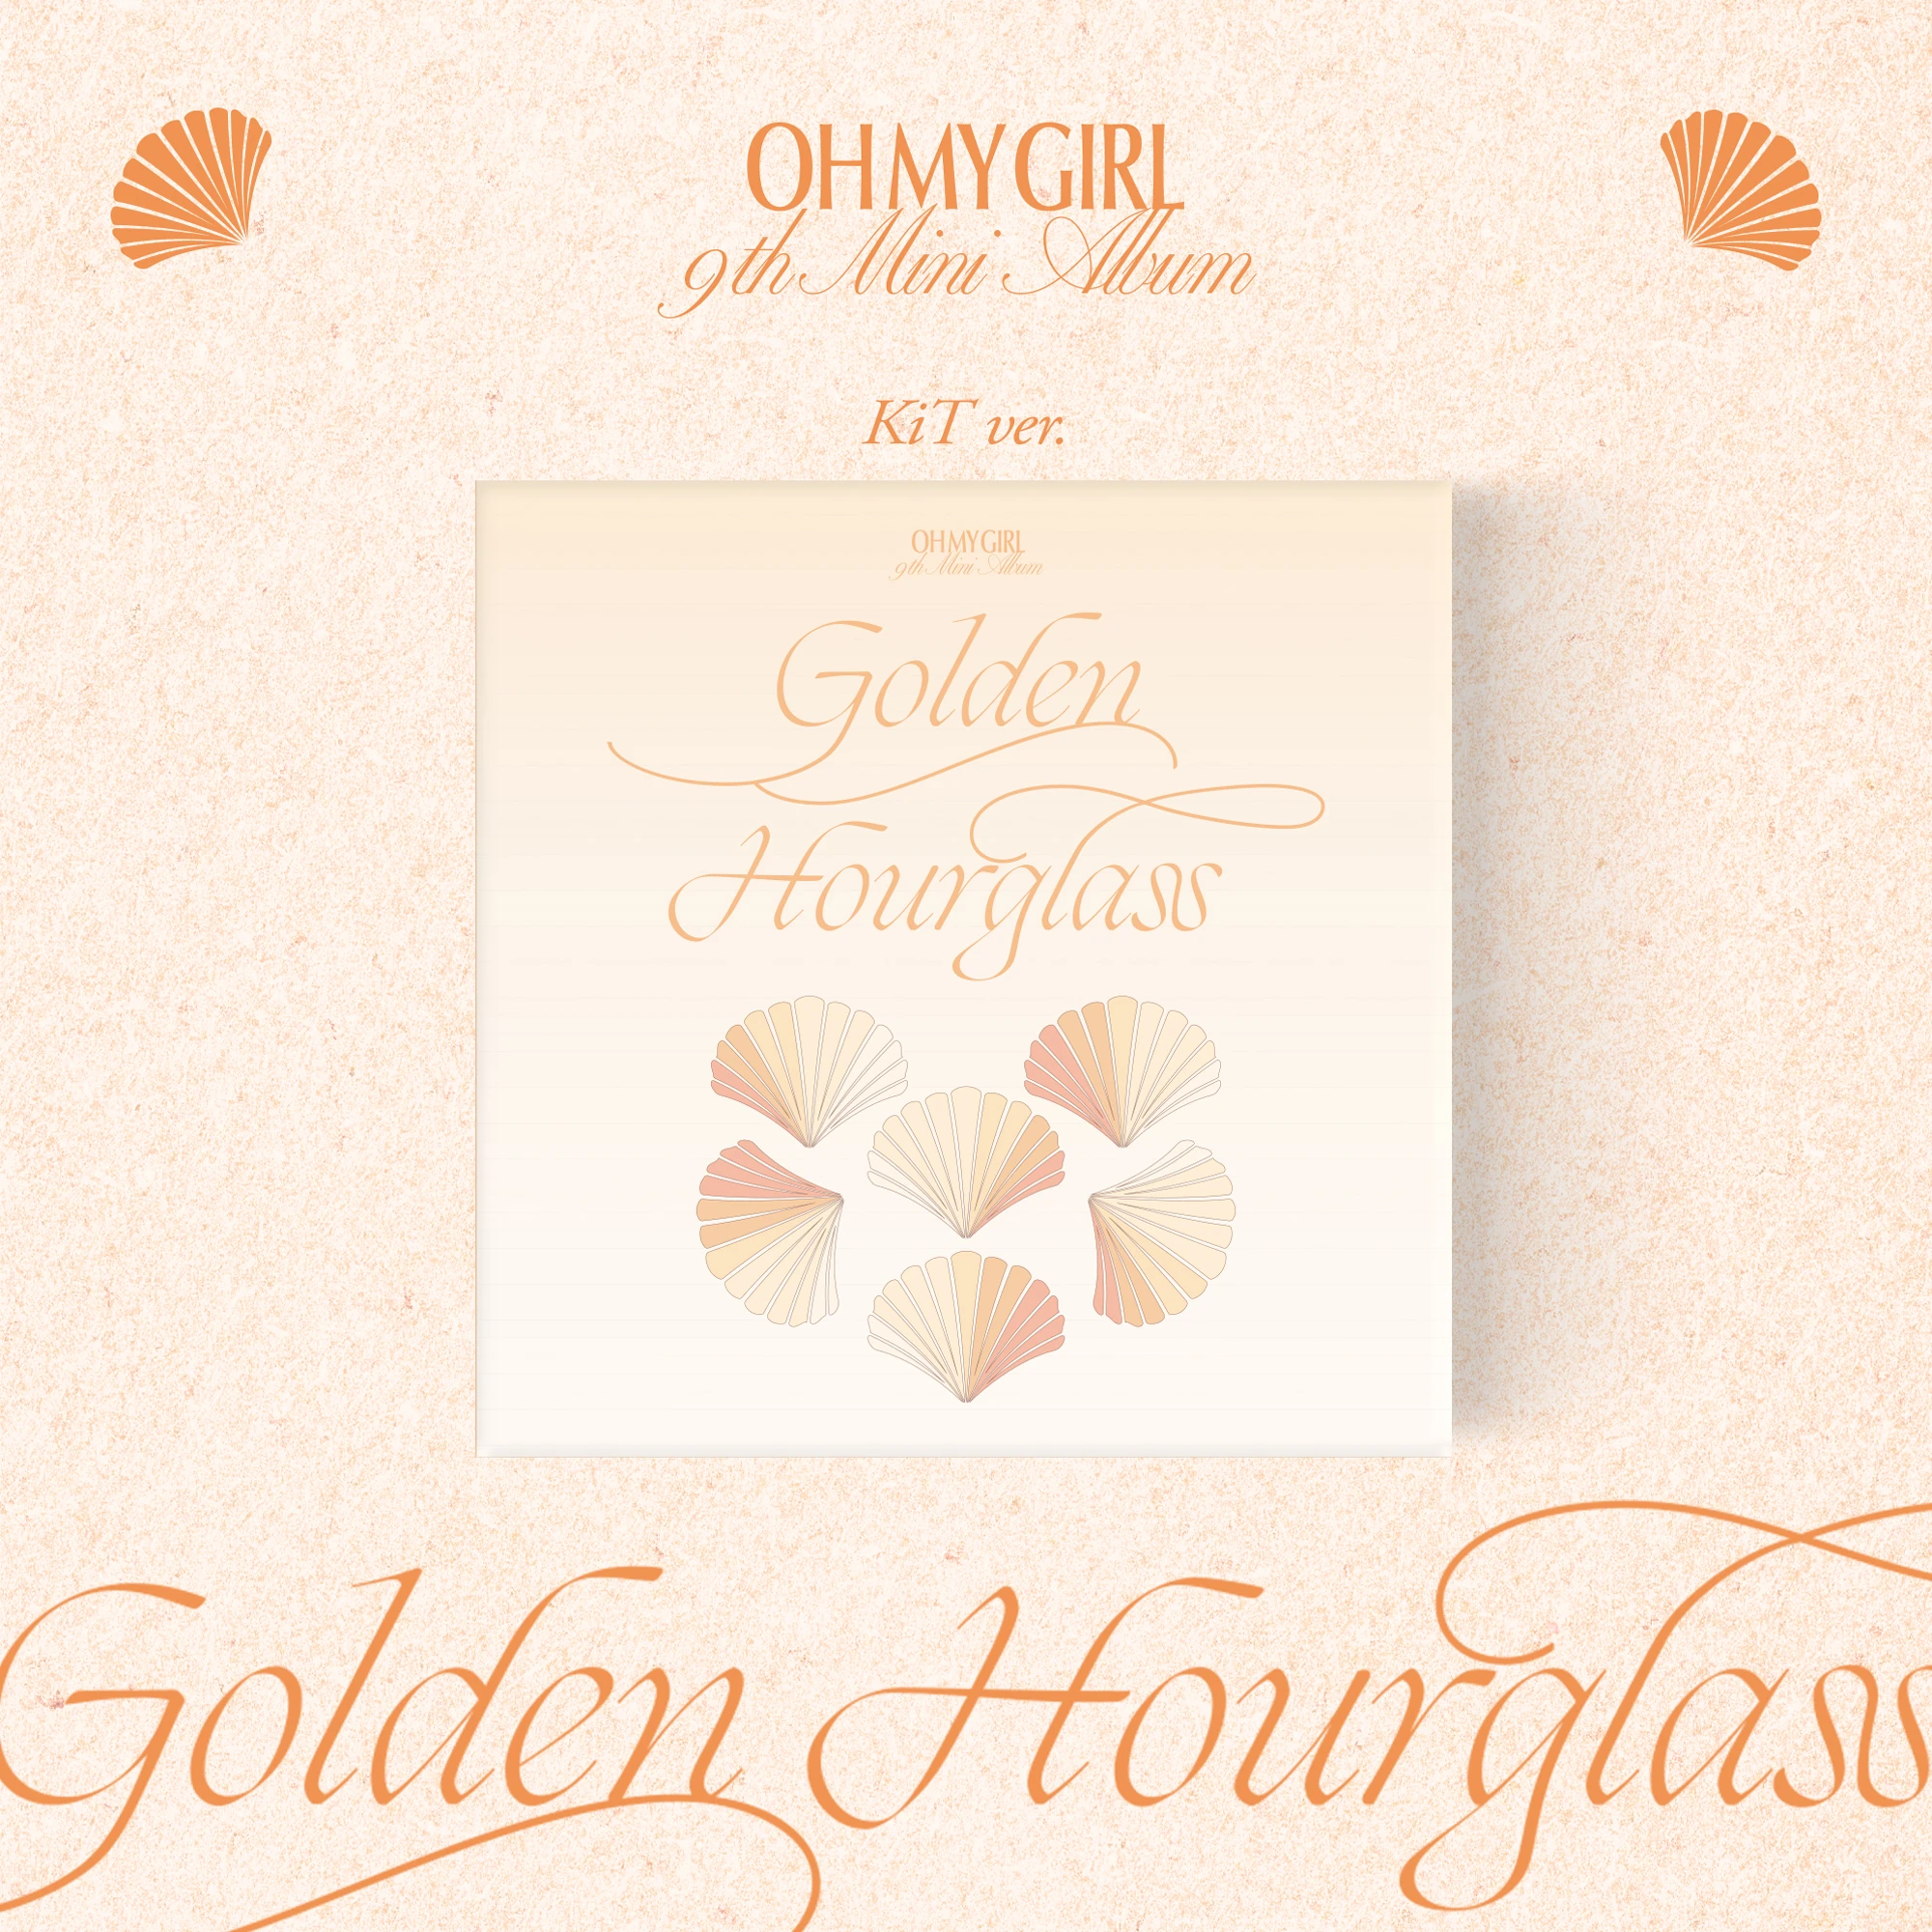 OH MY GIRL [Golden Hourglass] (KiT Ver.) | Makestar